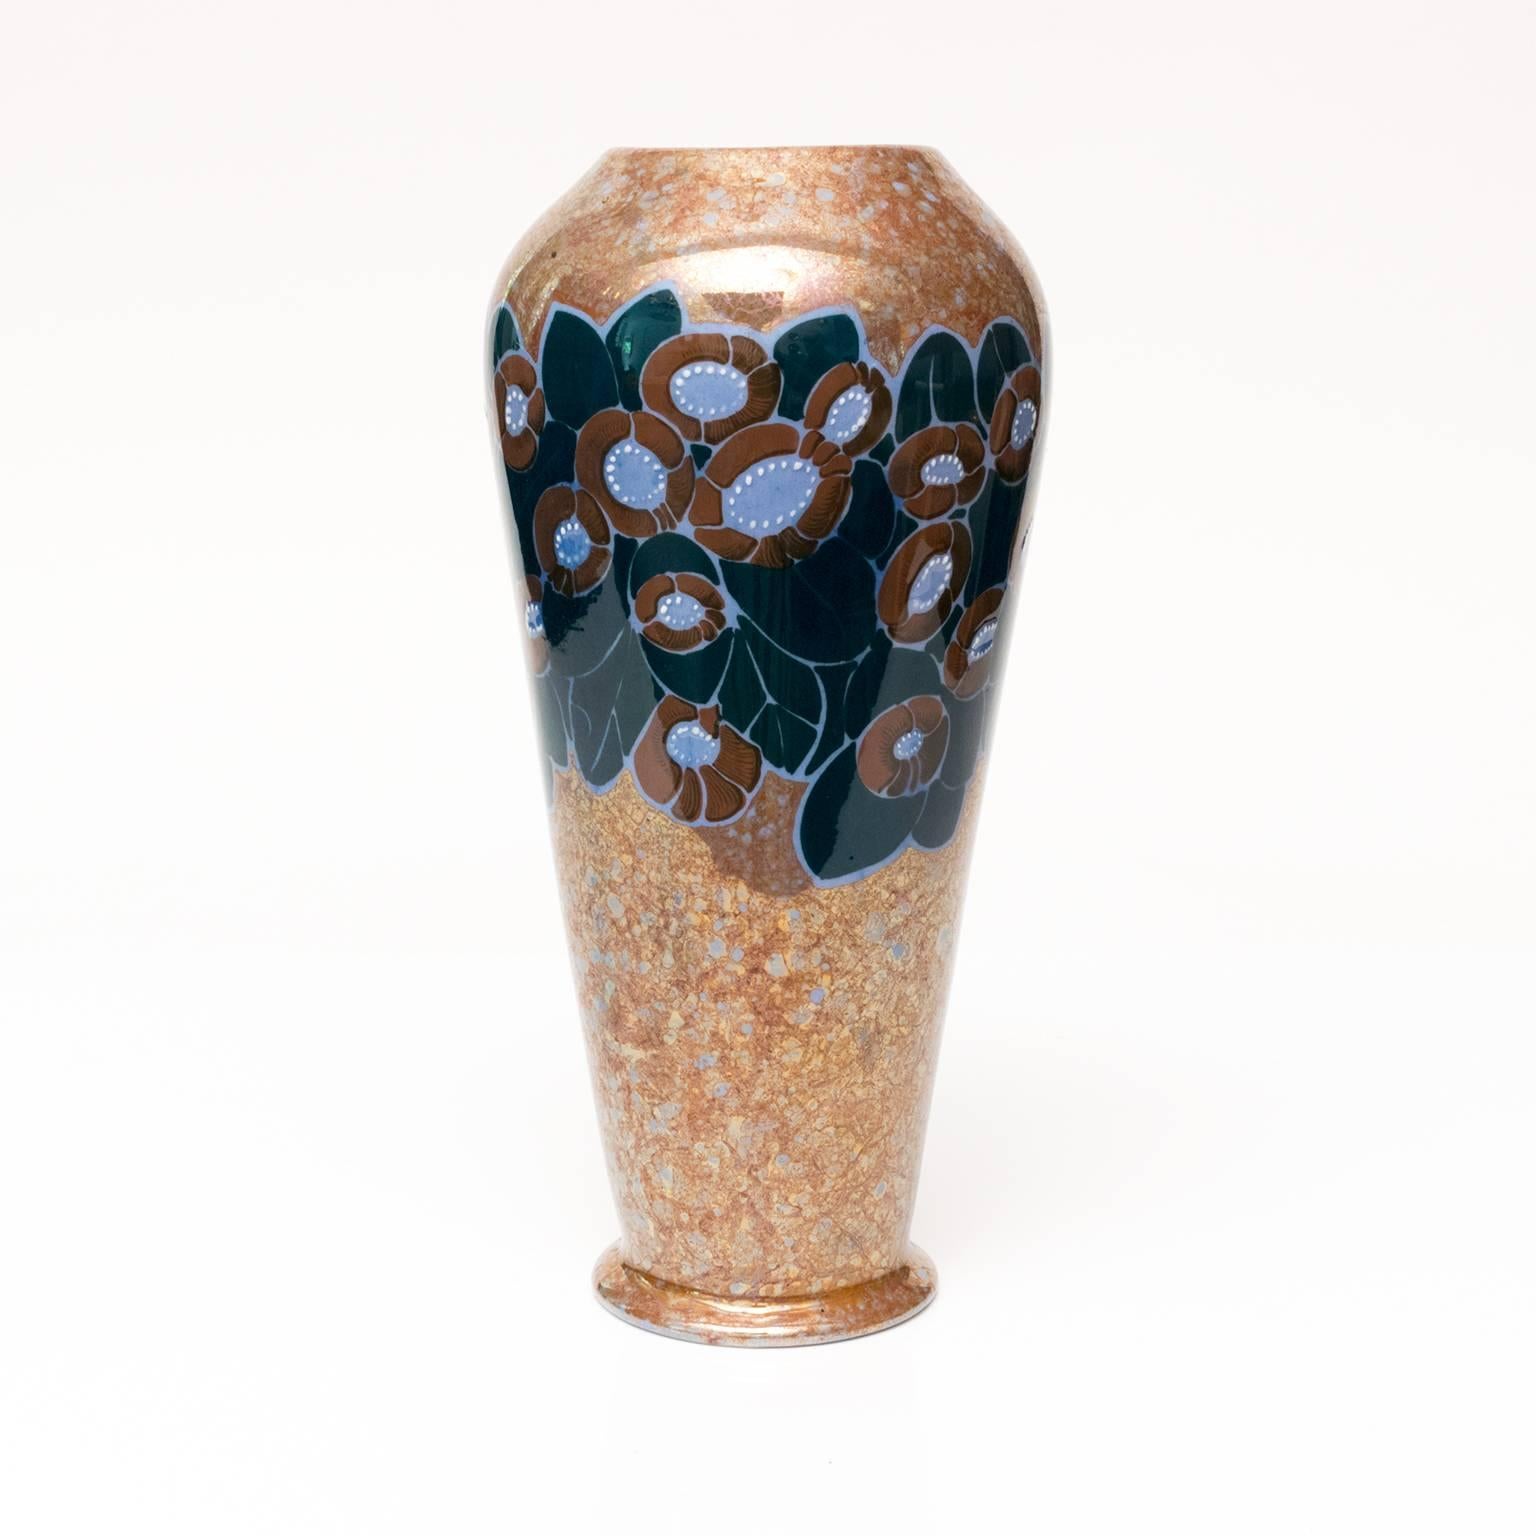 Grand vase moderne scandinave en céramique émaillée lustrée avec un motif floral sur un fond marbré. Fabriqué par Arabia Oy, Helsinki, Finlande. Dessiné par Thure Öberg, signé en bas 